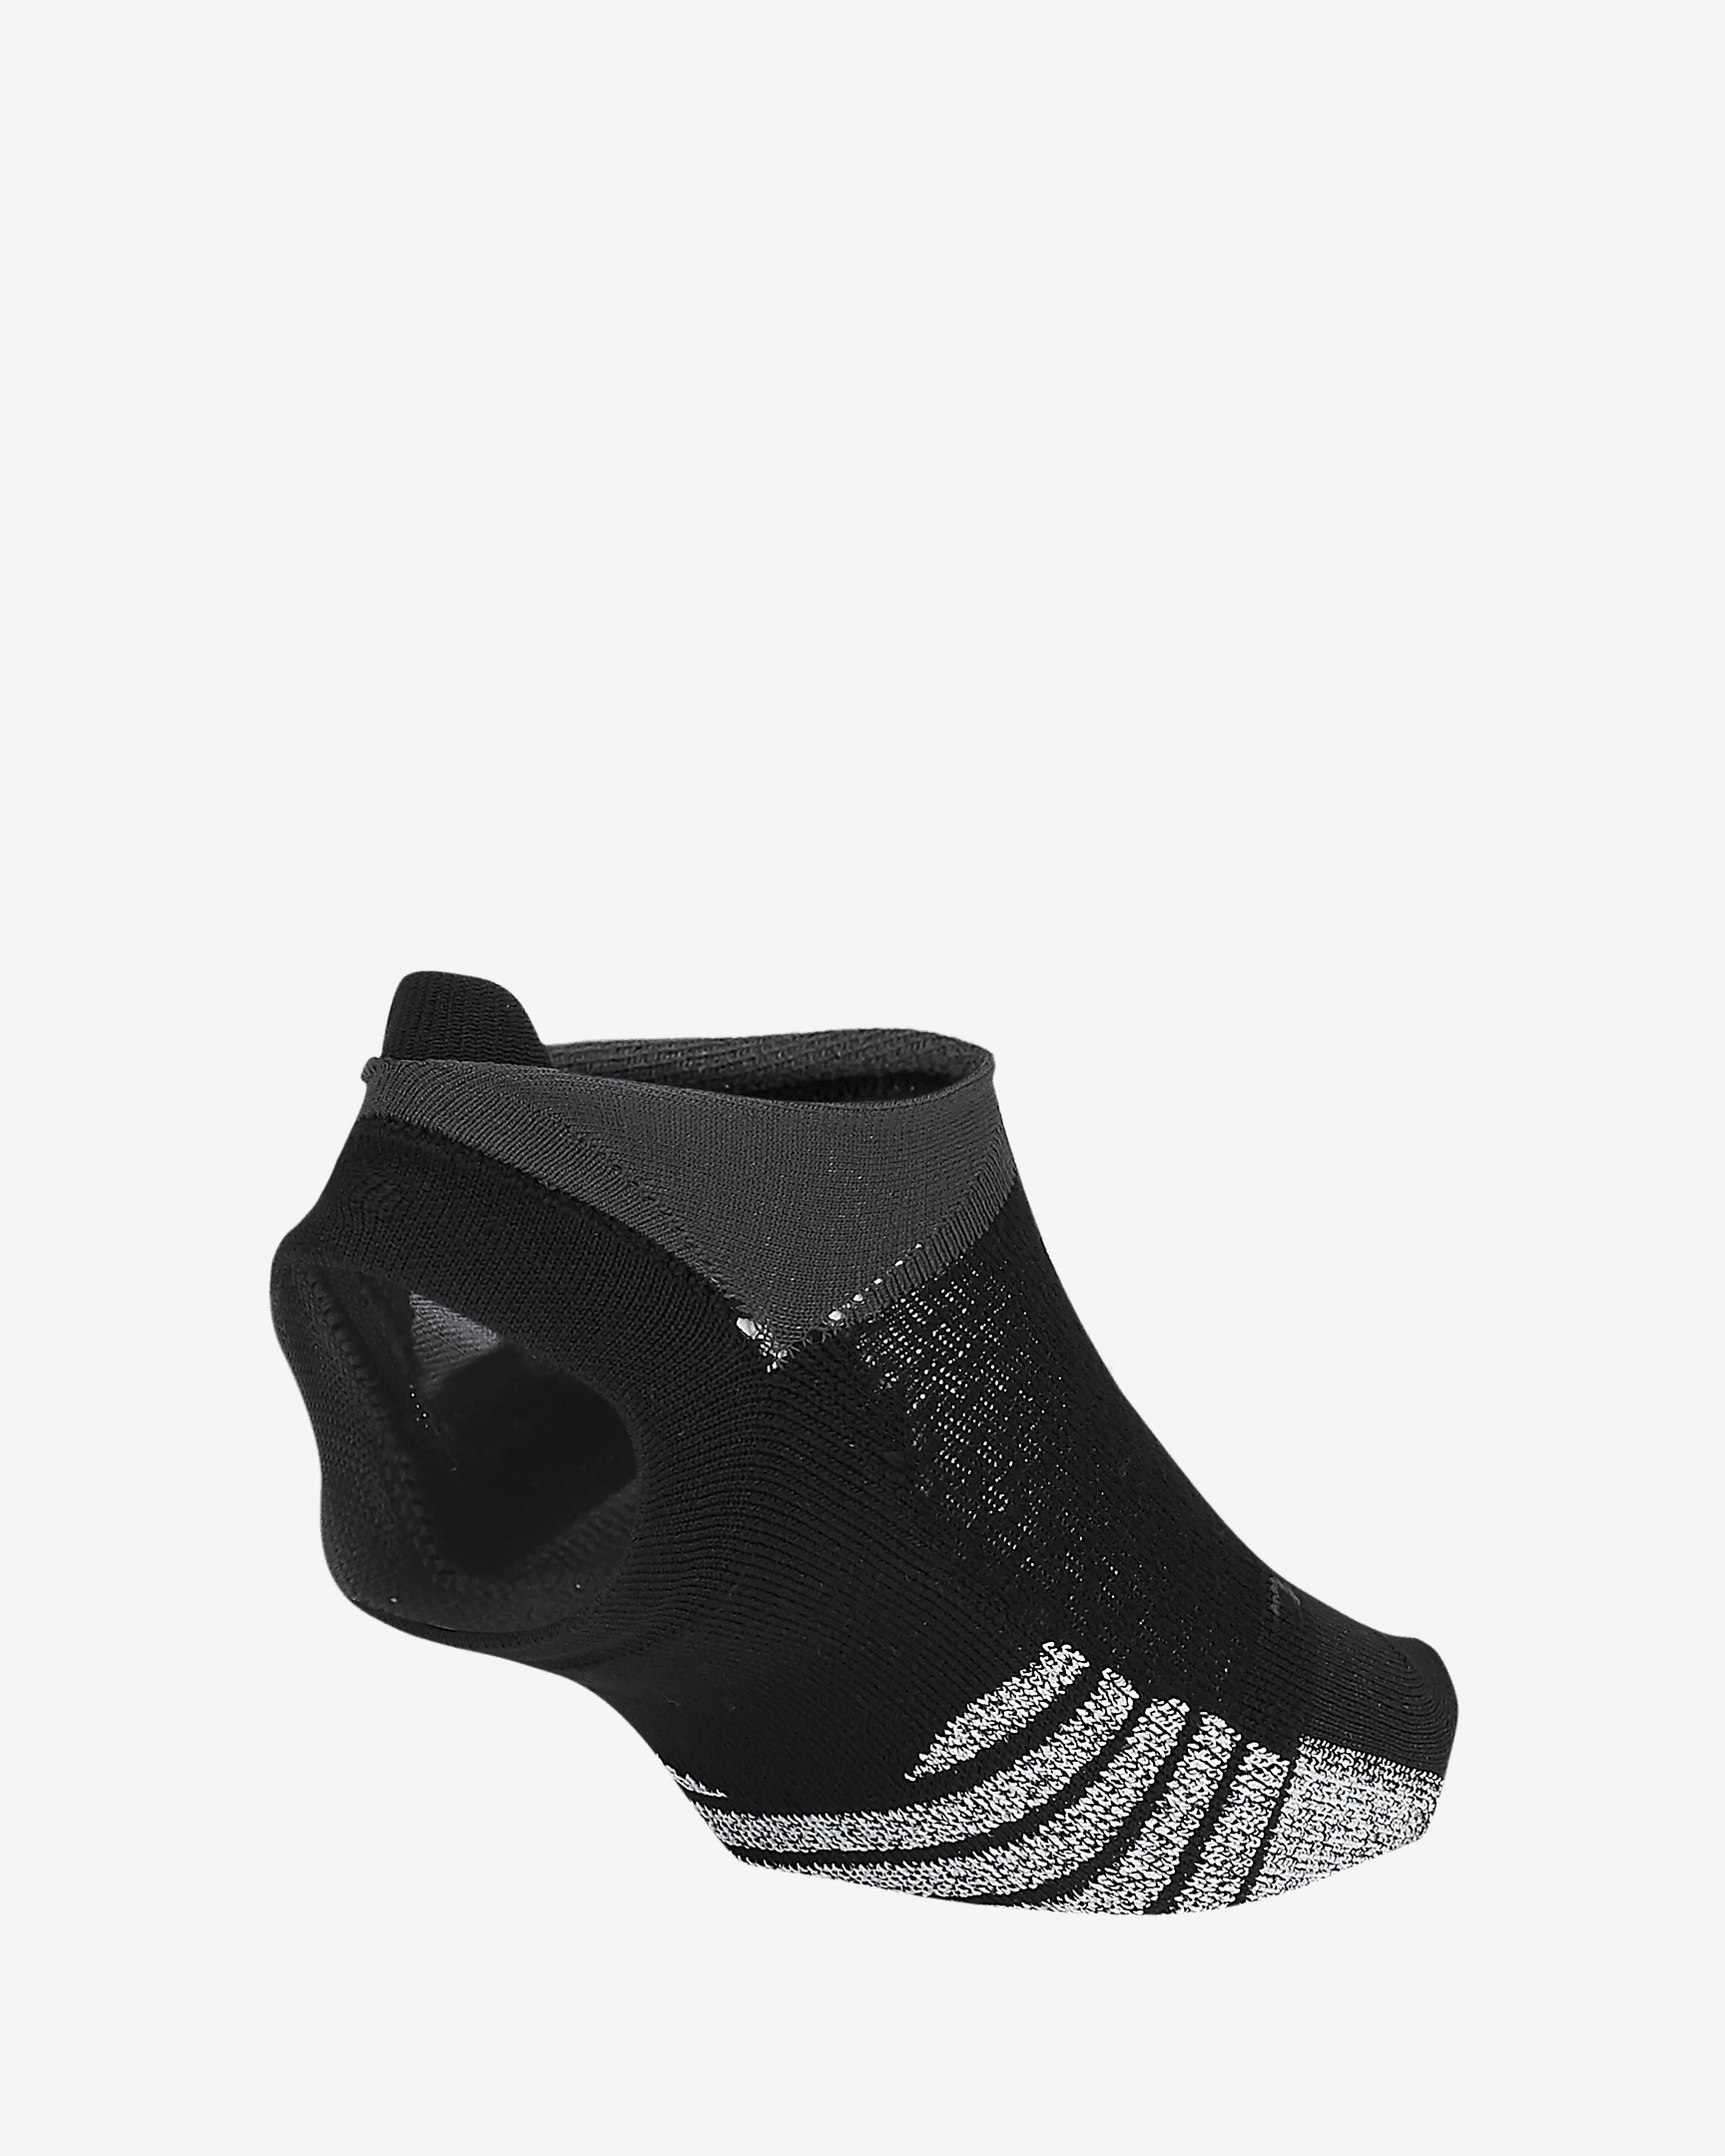 Nike Grip Studio Women's Toeless Footie Socks Black Grey SX7827 010 Size:  5.5-7 Wmn's 